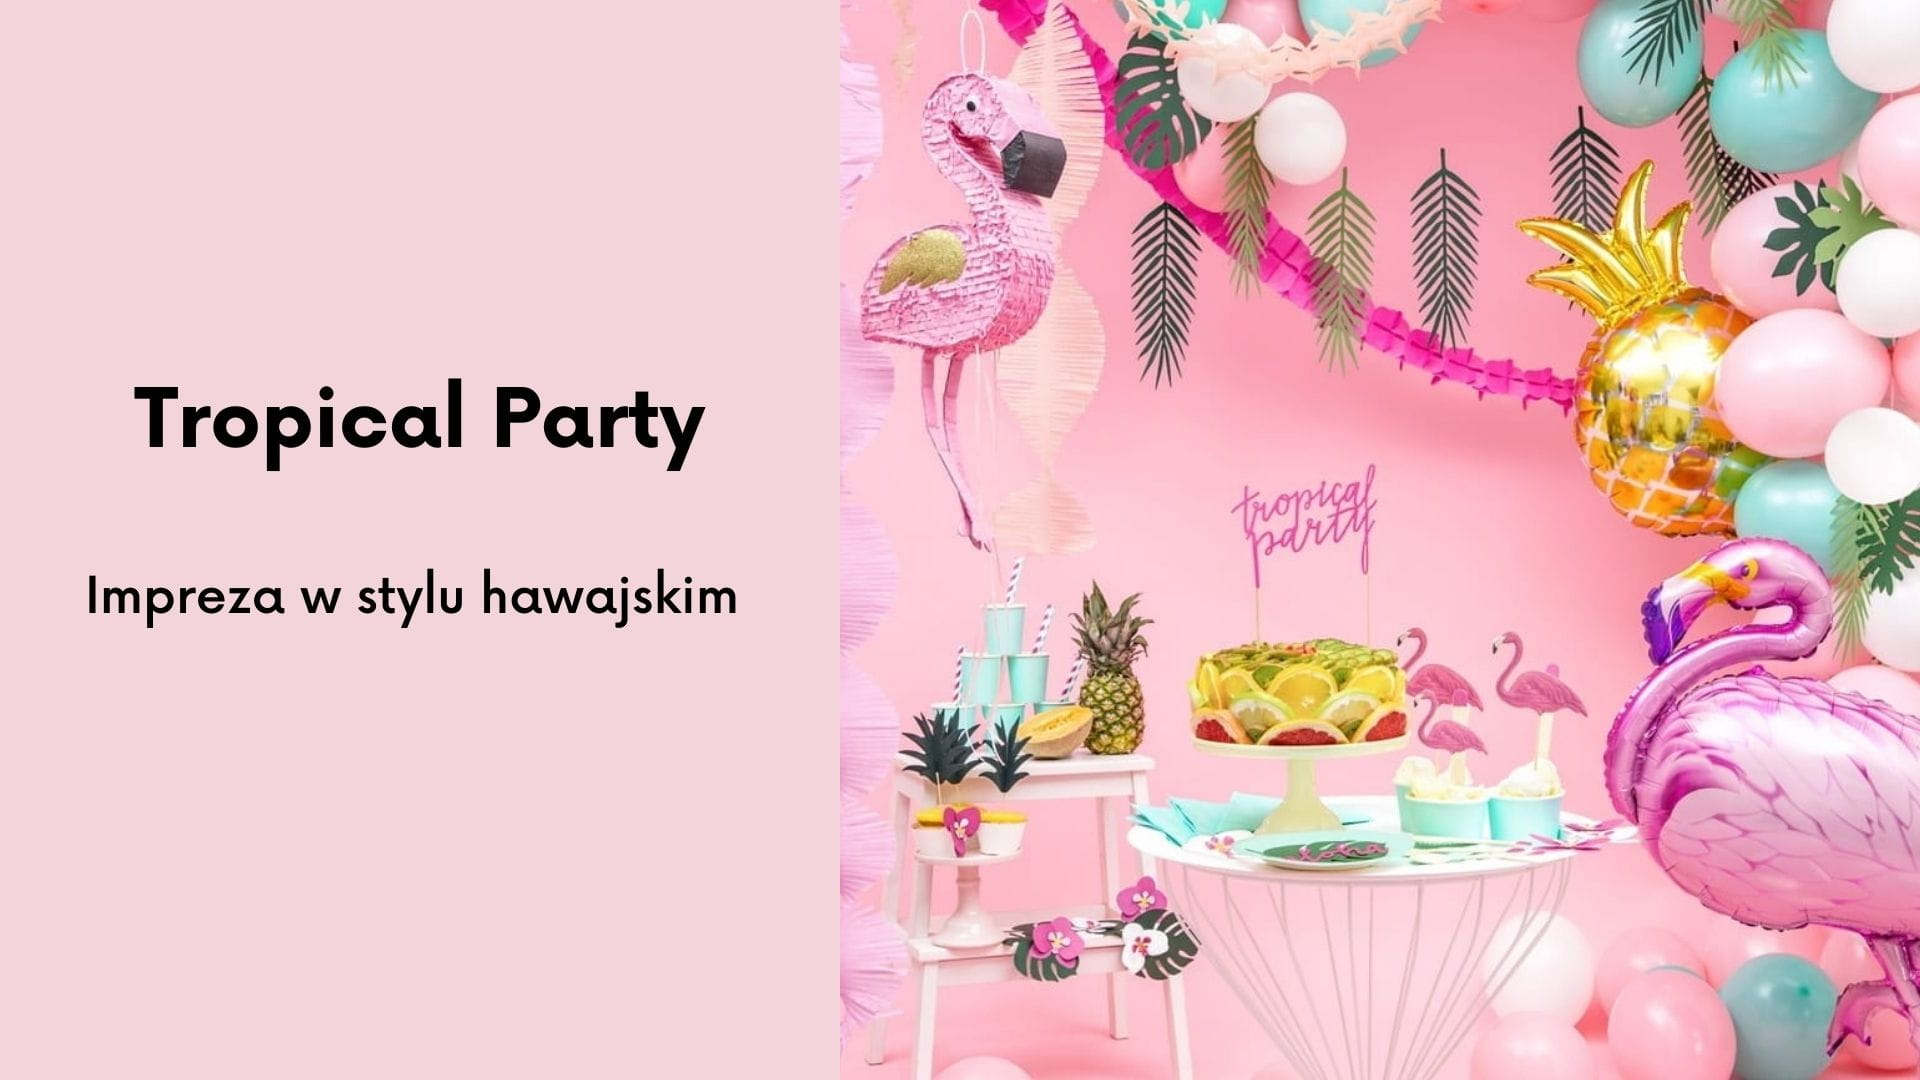 Tropical Party - pomysł na hawajską imprezę